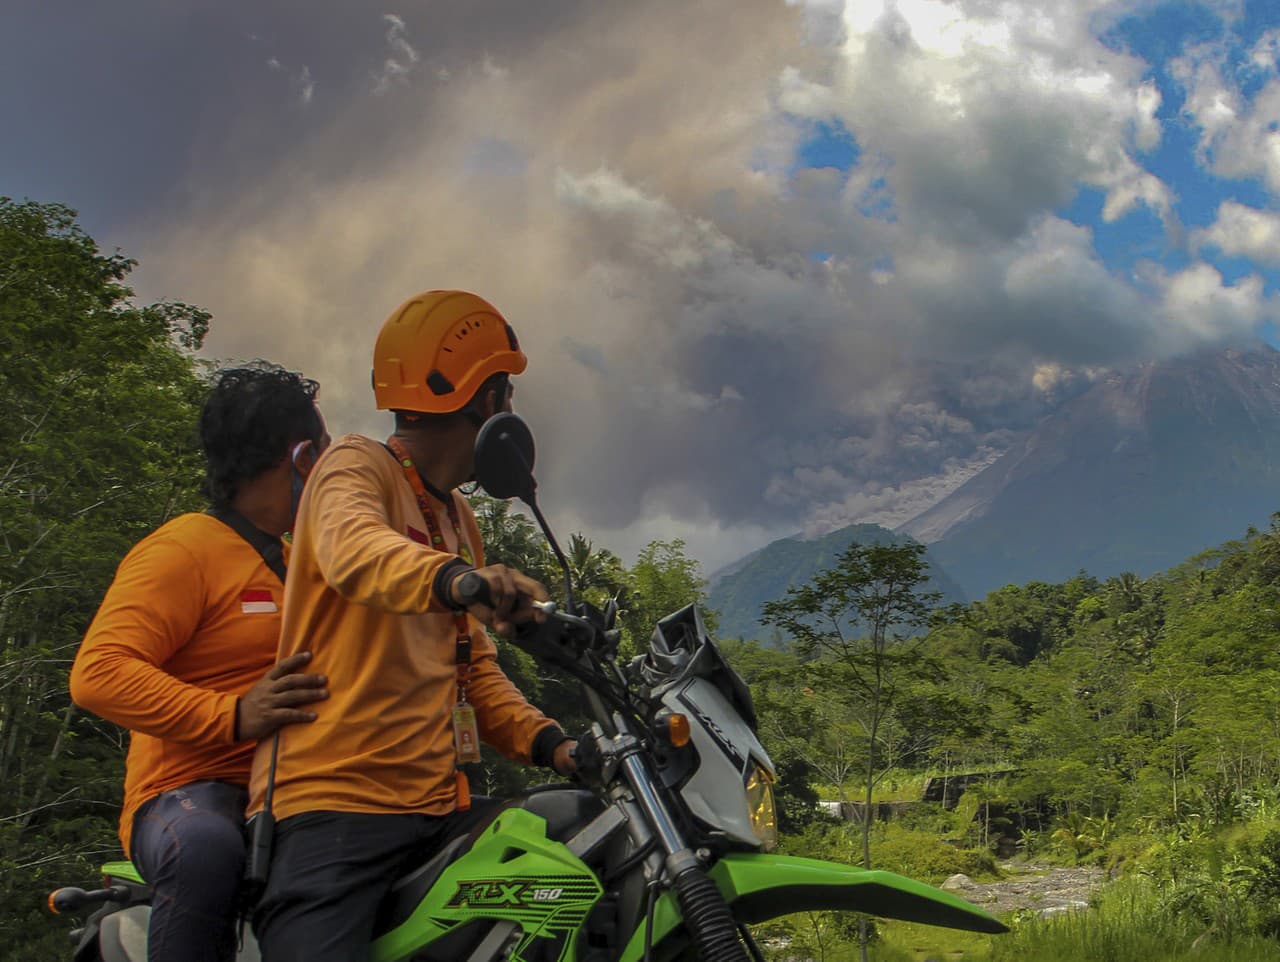 Indonézska sopka Merapi je znova aktívna